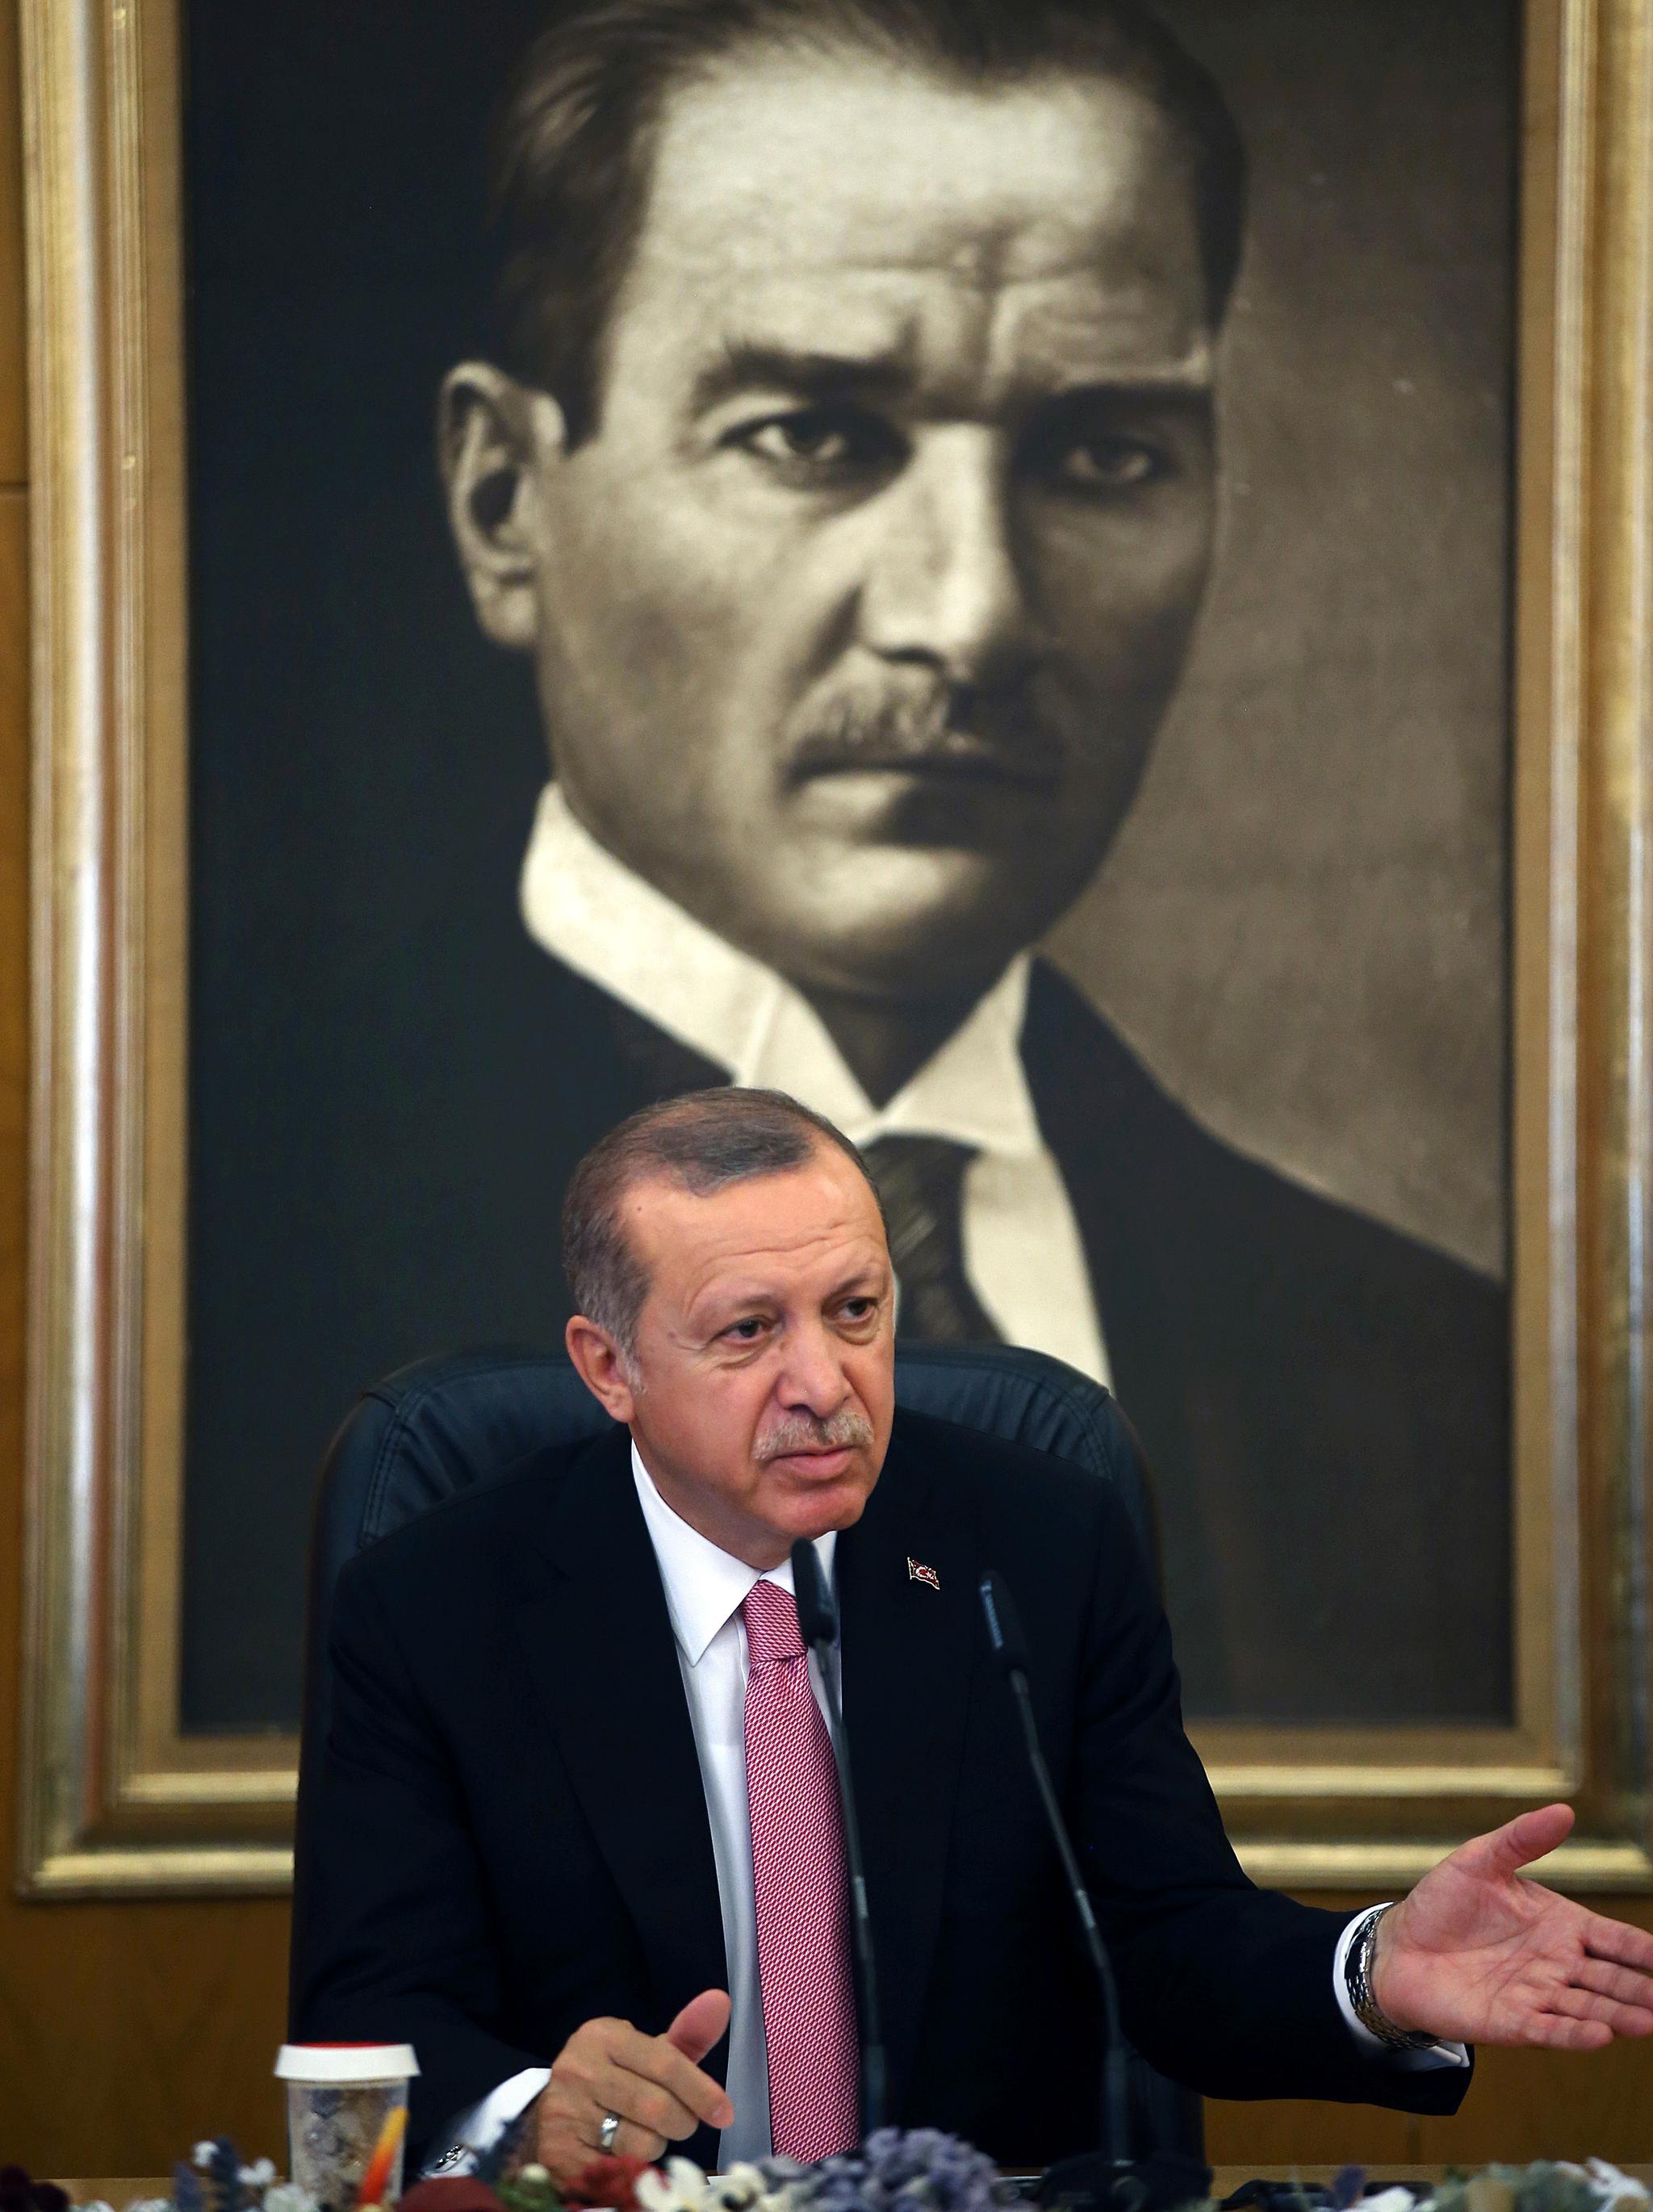  Et bilde av det moderne Tyrkias grunnlegger, Mustafa Kemal Atatürk, henger bak landets nåværende president, Recep Tayyip Erdogan. 